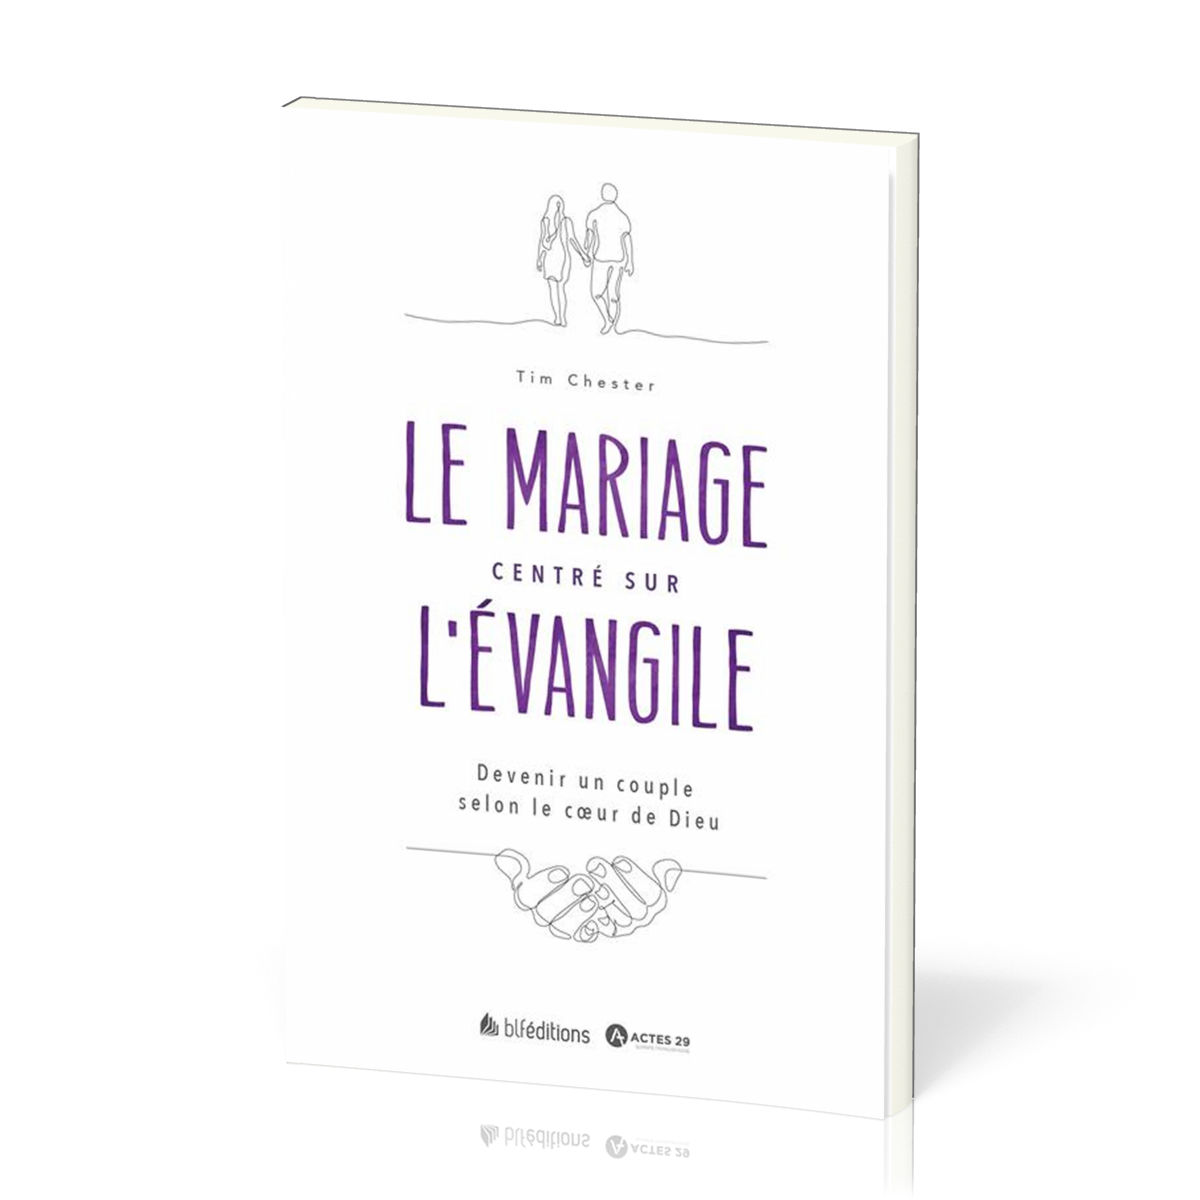 Mariage centré sur l'évangile (Le) - Devenir un couple selon le coeur de Dieu